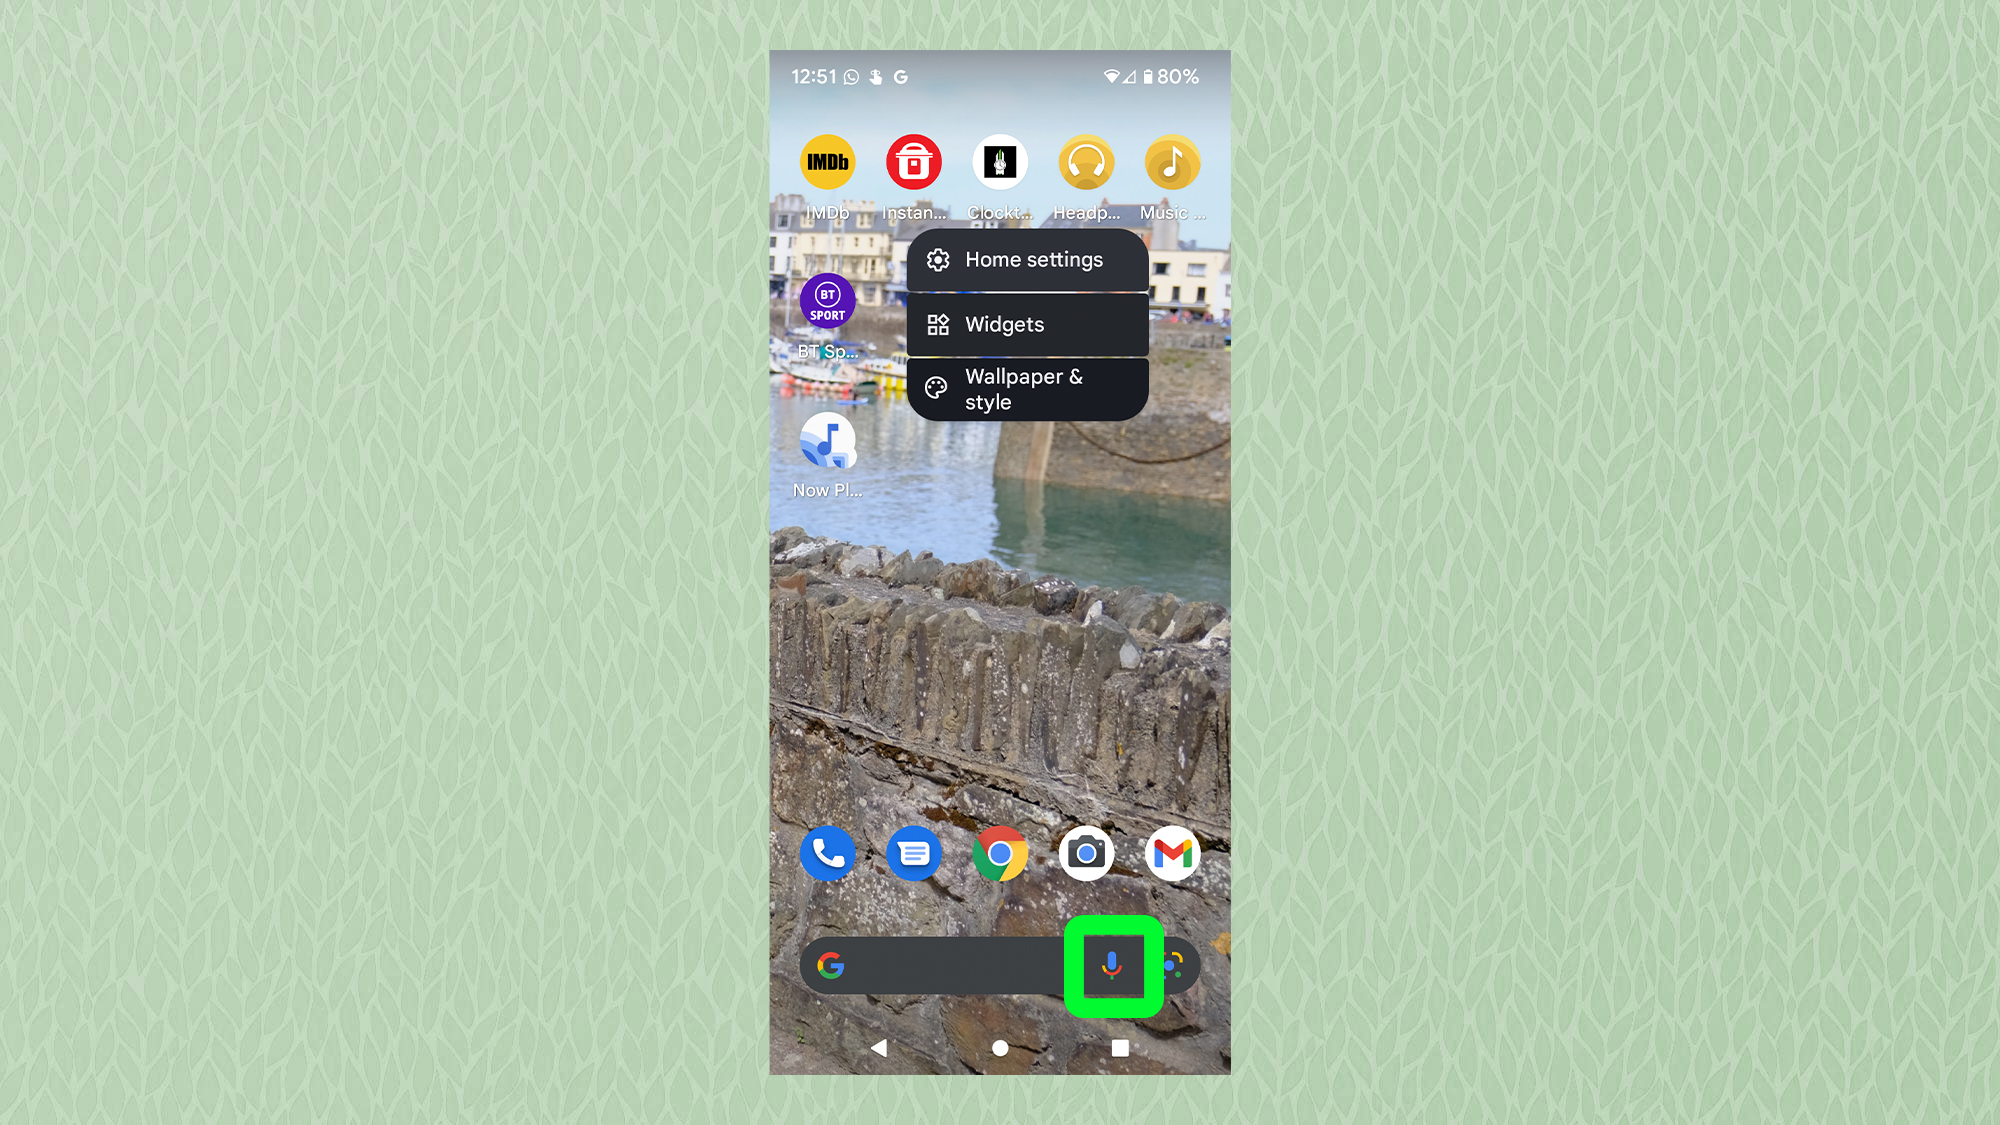 Скриншот с Android, показывающий панель поиска с выделенным микрофоном